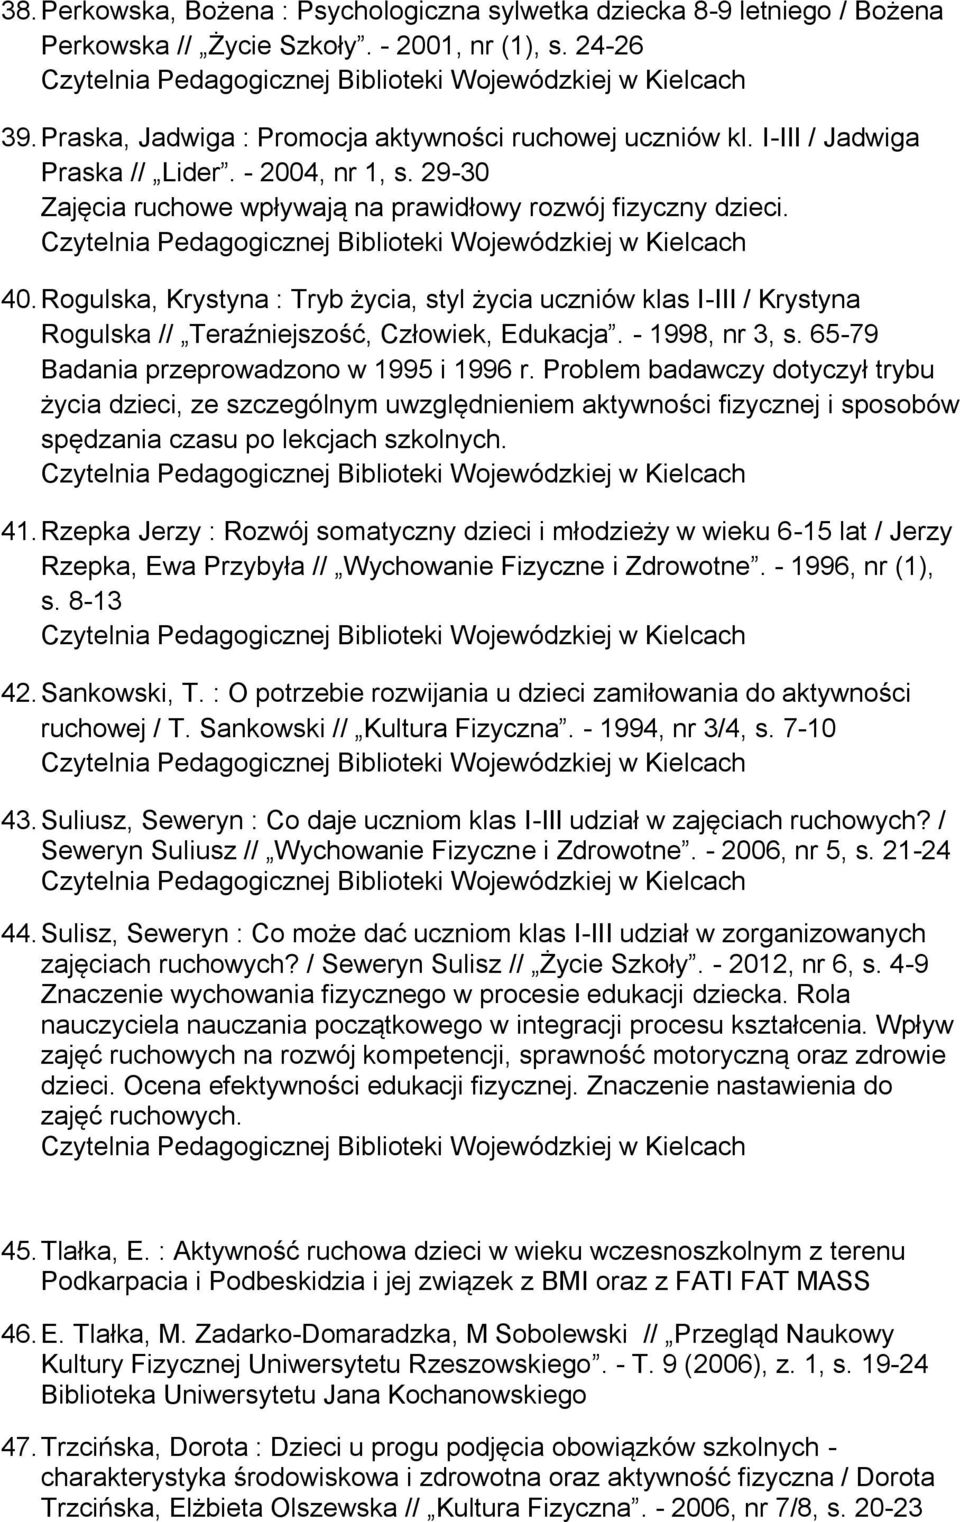 Rogulska, Krystyna : Tryb życia, styl życia uczniów klas I-III / Krystyna Rogulska // Teraźniejszość, Człowiek, Edukacja. - 1998, nr 3, s. 65-79 Badania przeprowadzono w 1995 i 1996 r.